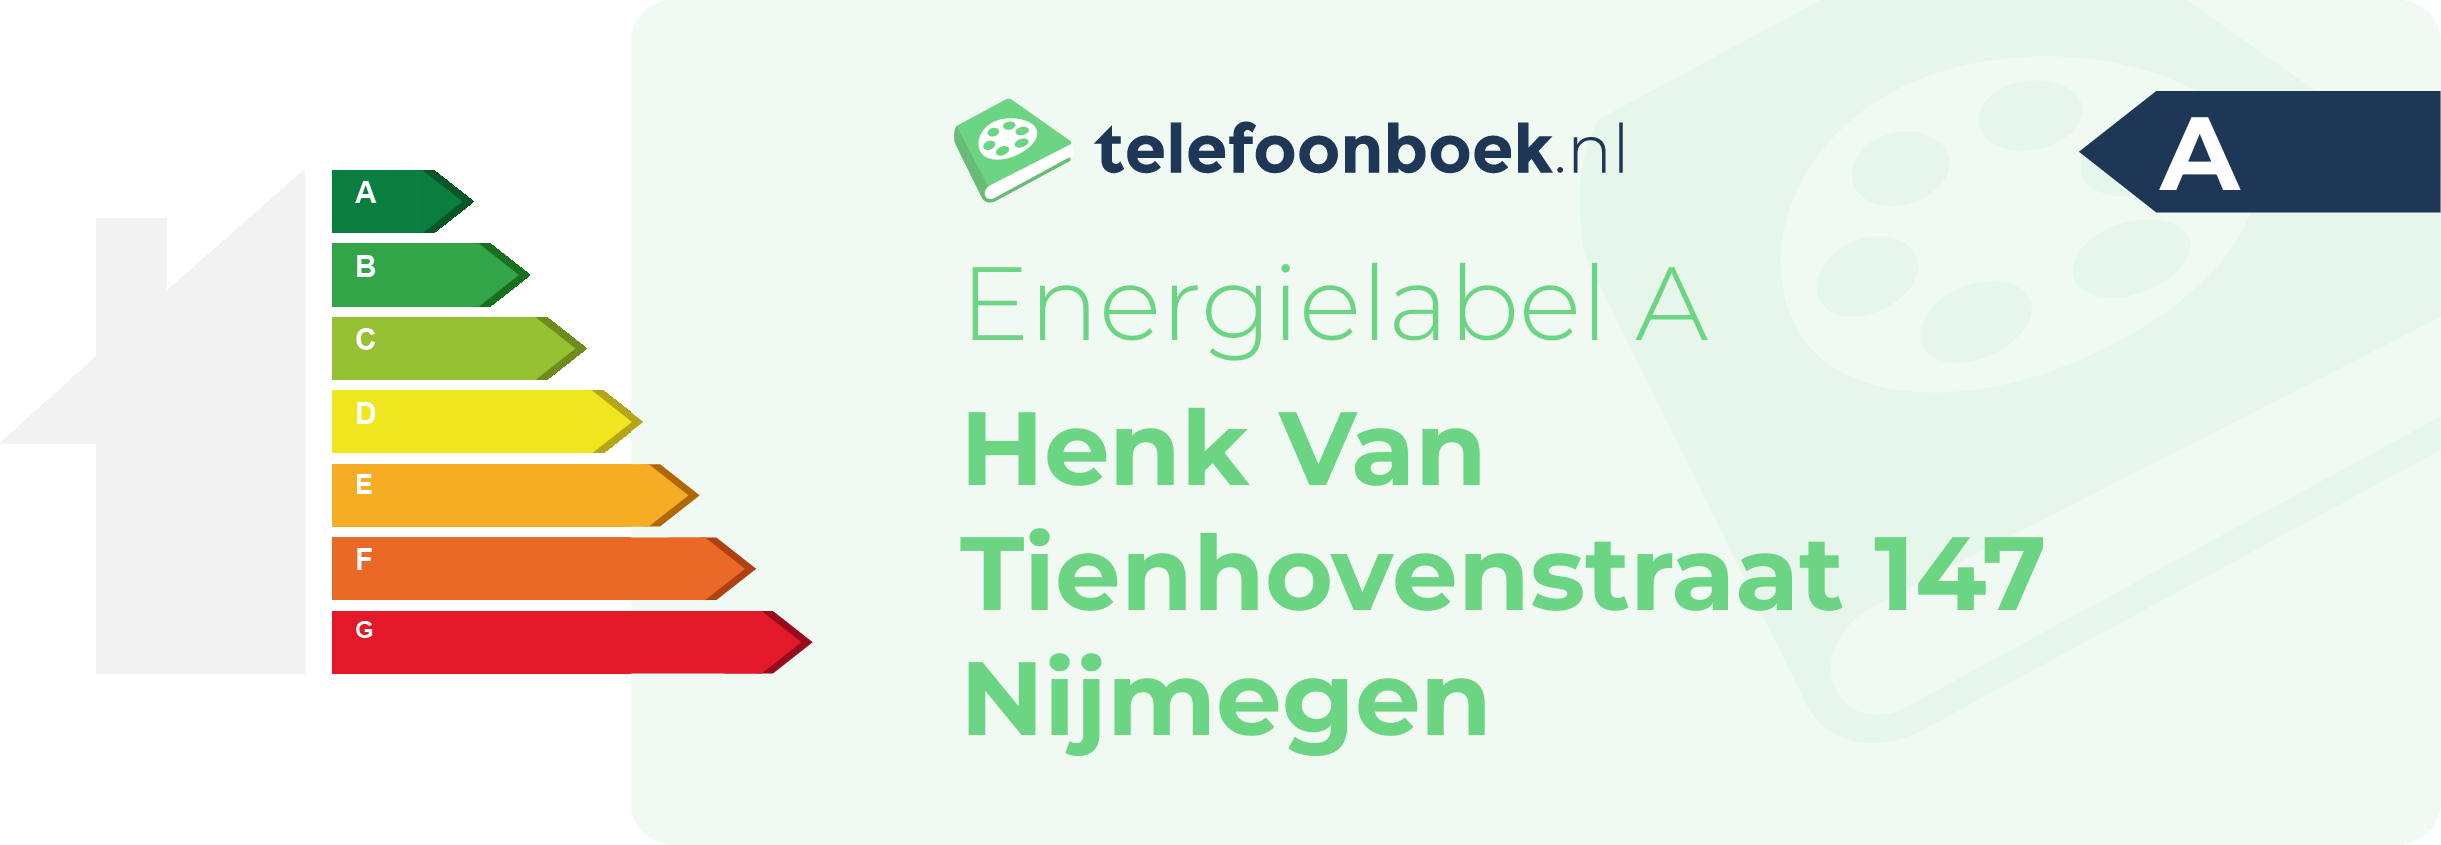 Energielabel Henk Van Tienhovenstraat 147 Nijmegen